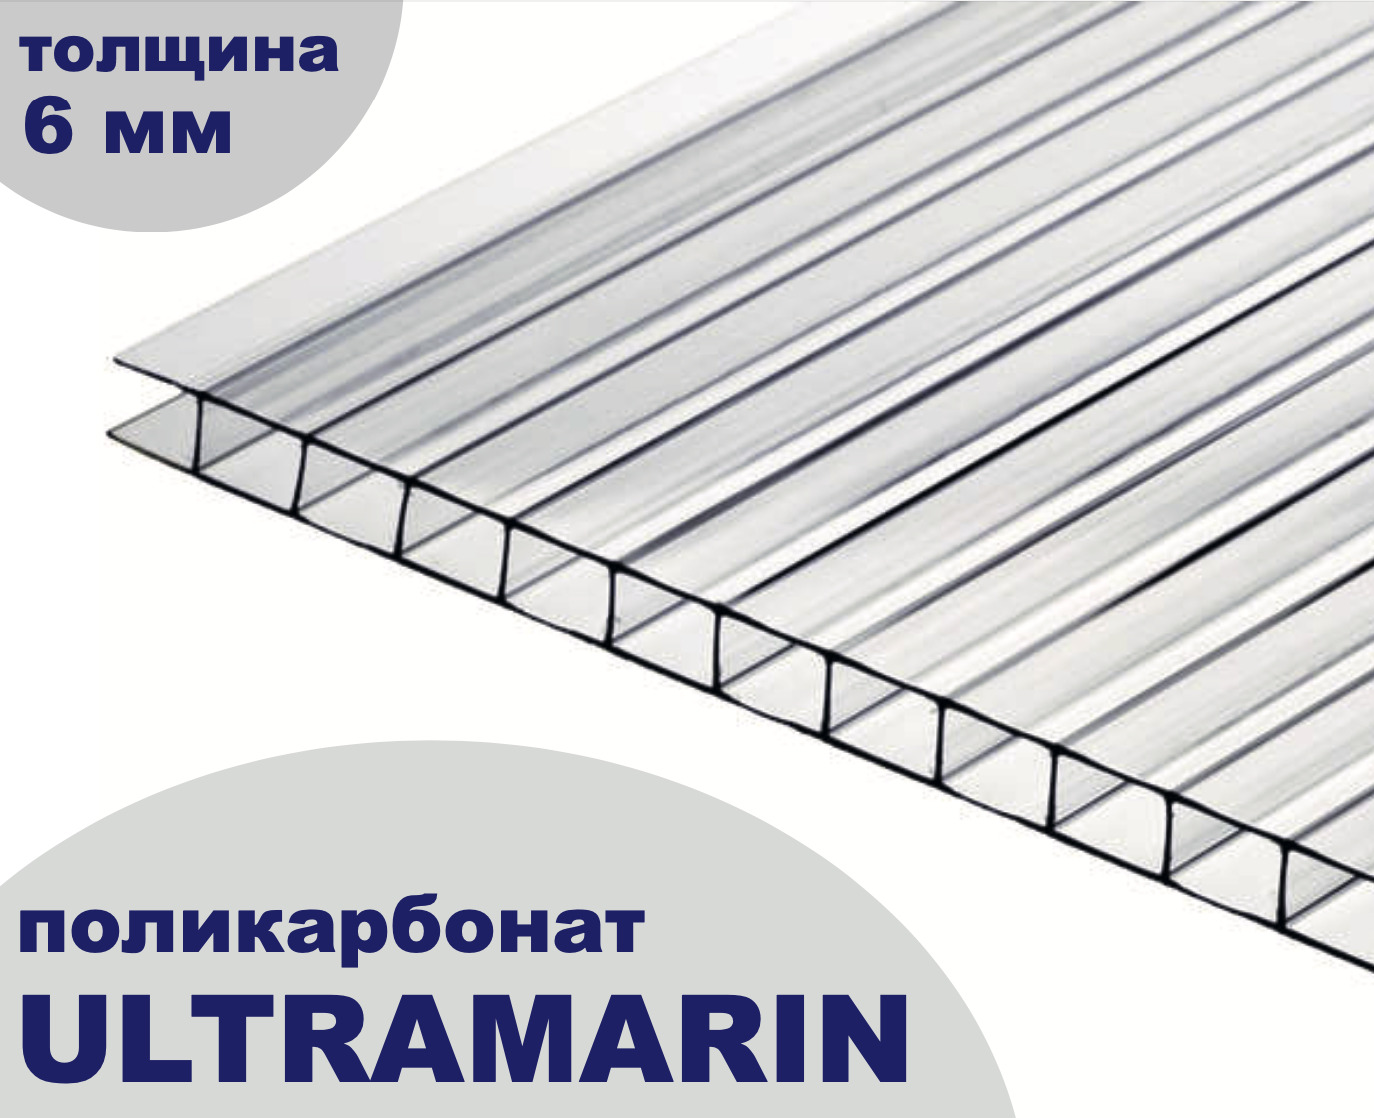 Поликарбонат сотовый для теплиц Plastilux Ultramarin прозрачный, 6 мм, 6 метров, 3 листа